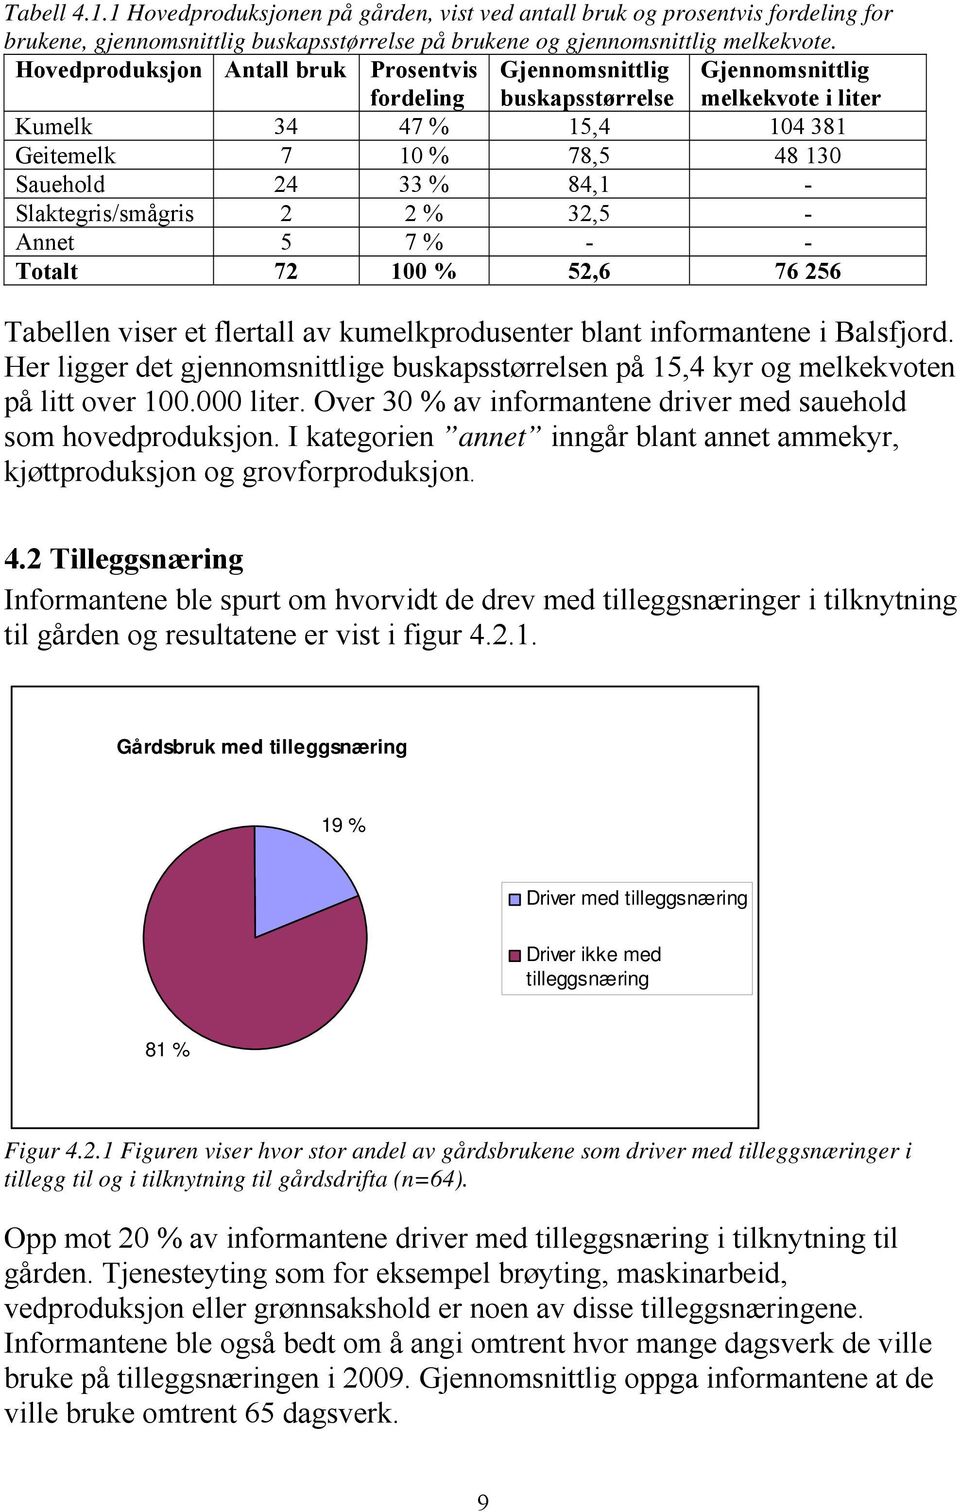 Slaktegris/smågris 2 2 % 32,5 - Annet 5 7 % - - Totalt 72 100 % 52,6 76 256 Tabellen viser et flertall av kumelkprodusenter blant informantene i Balsfjord.